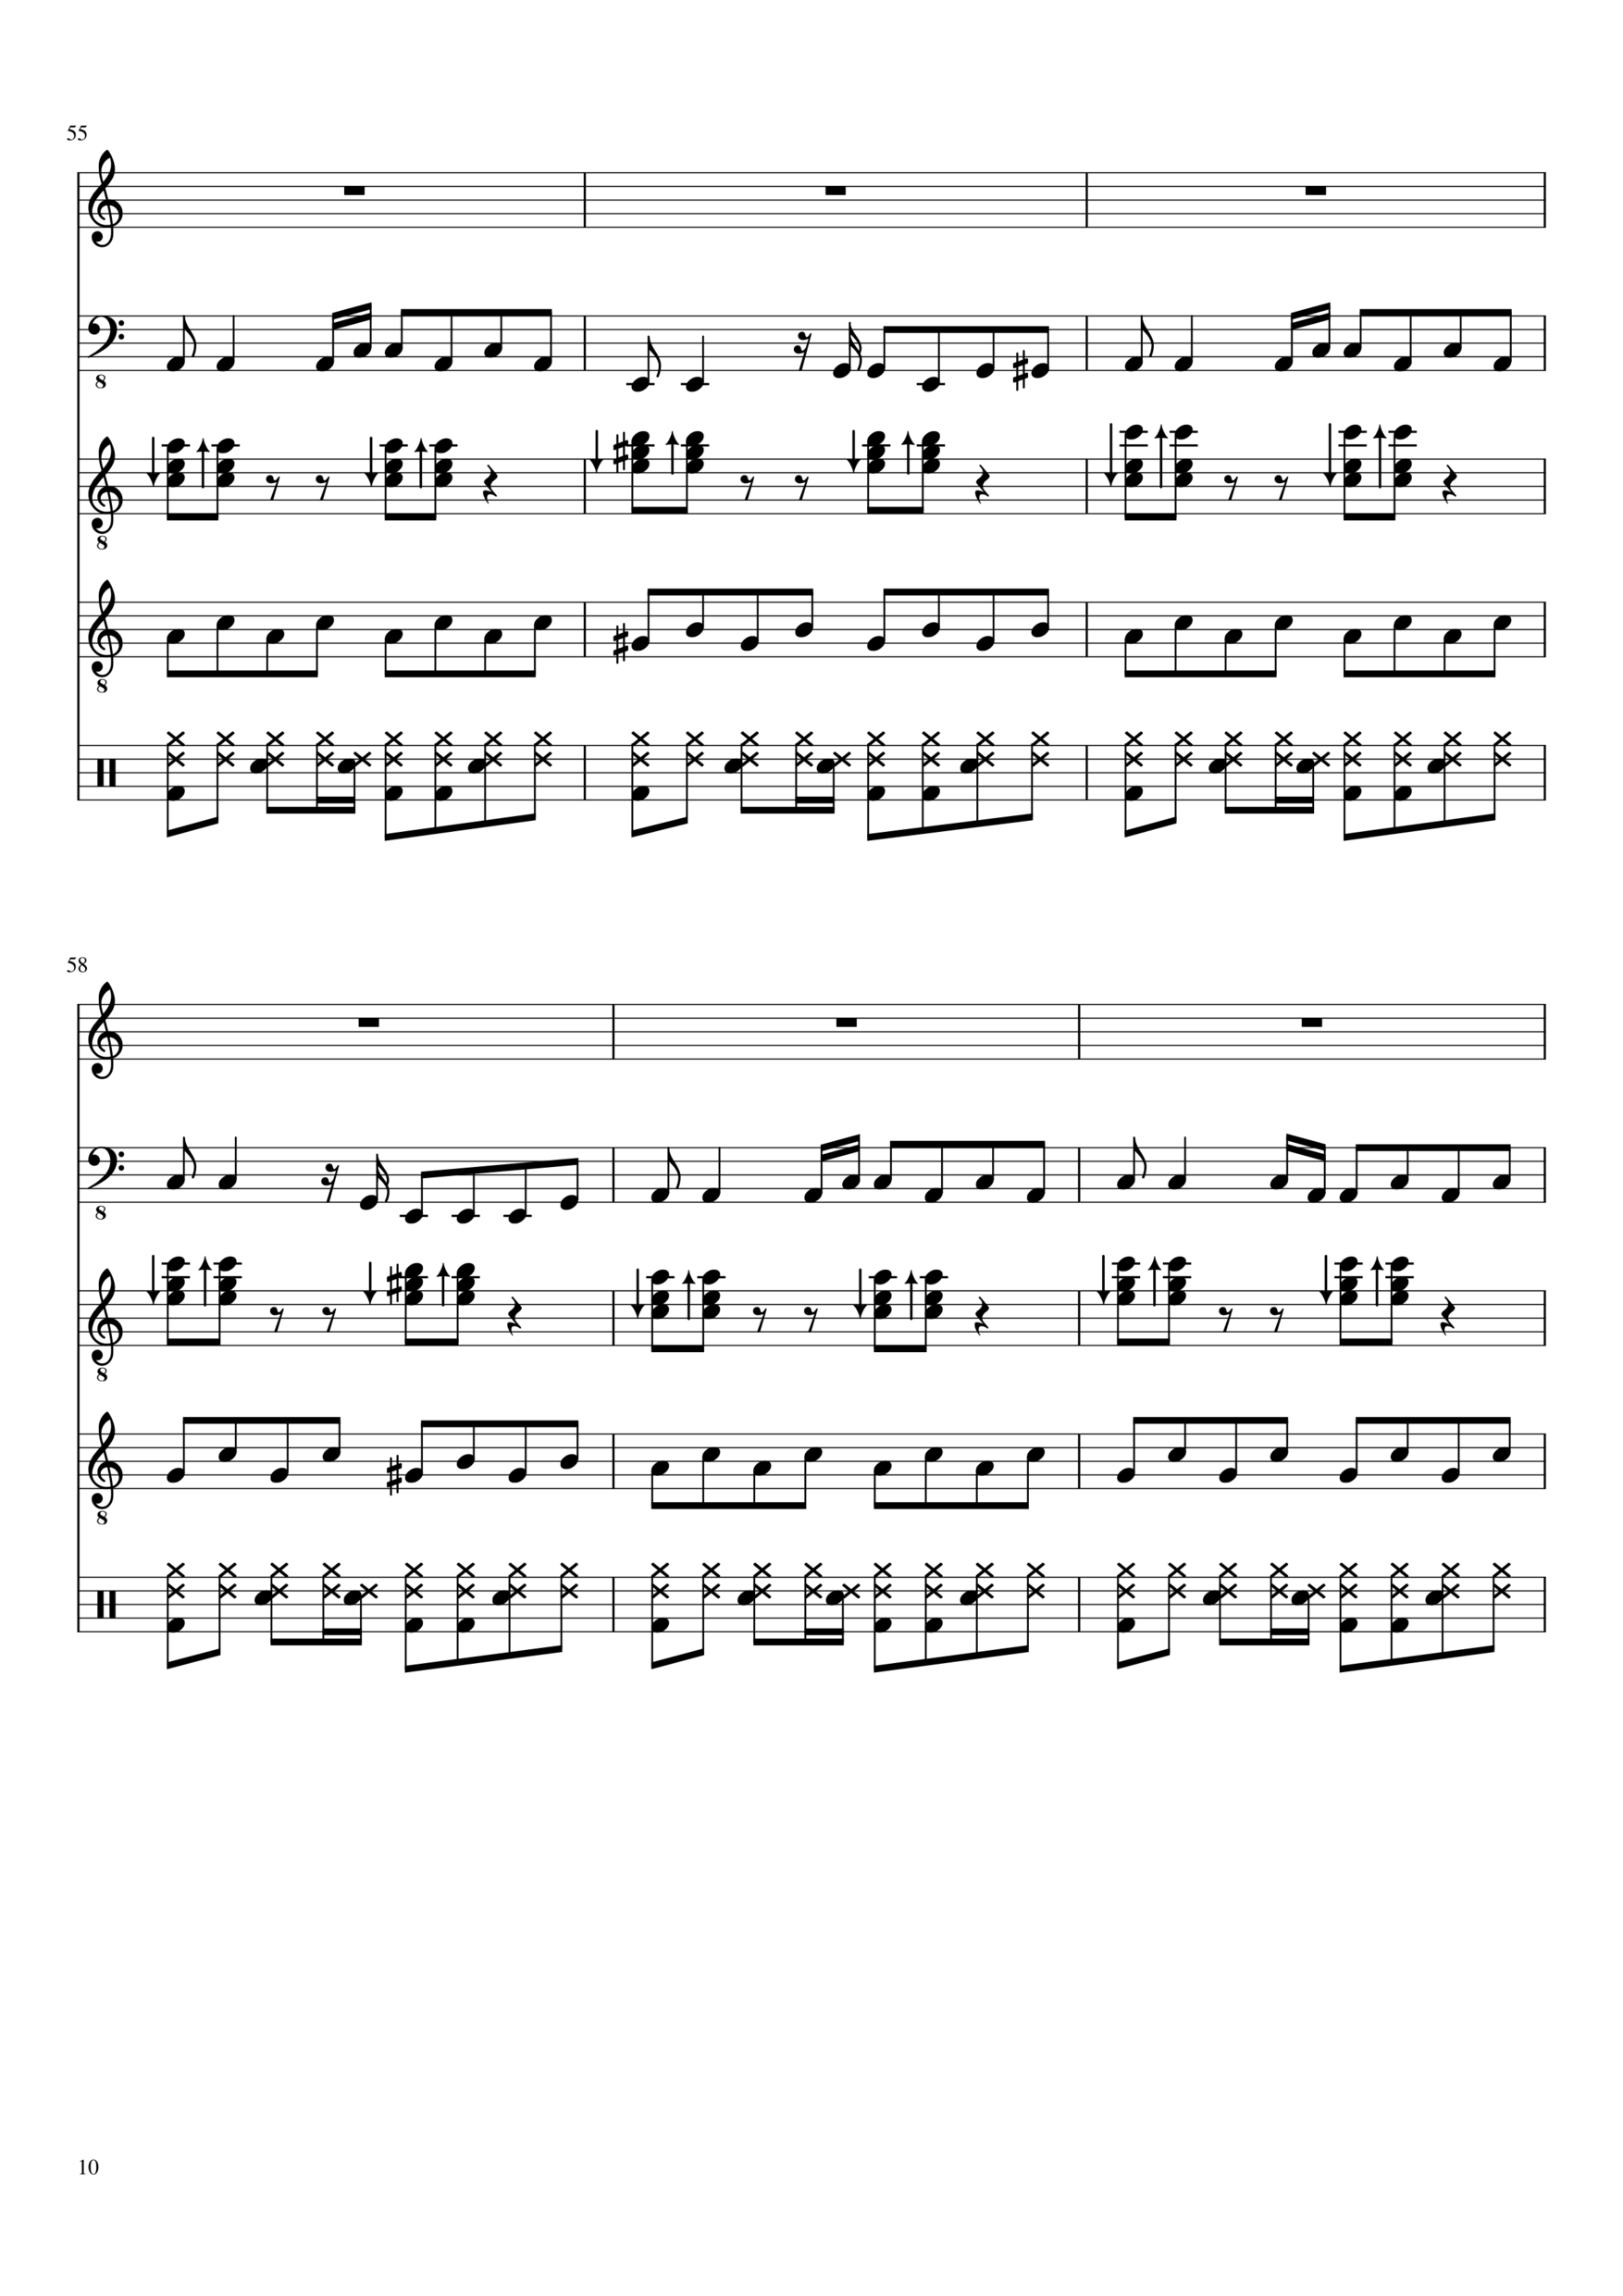 Vechnaya lyubov slide, Image 10